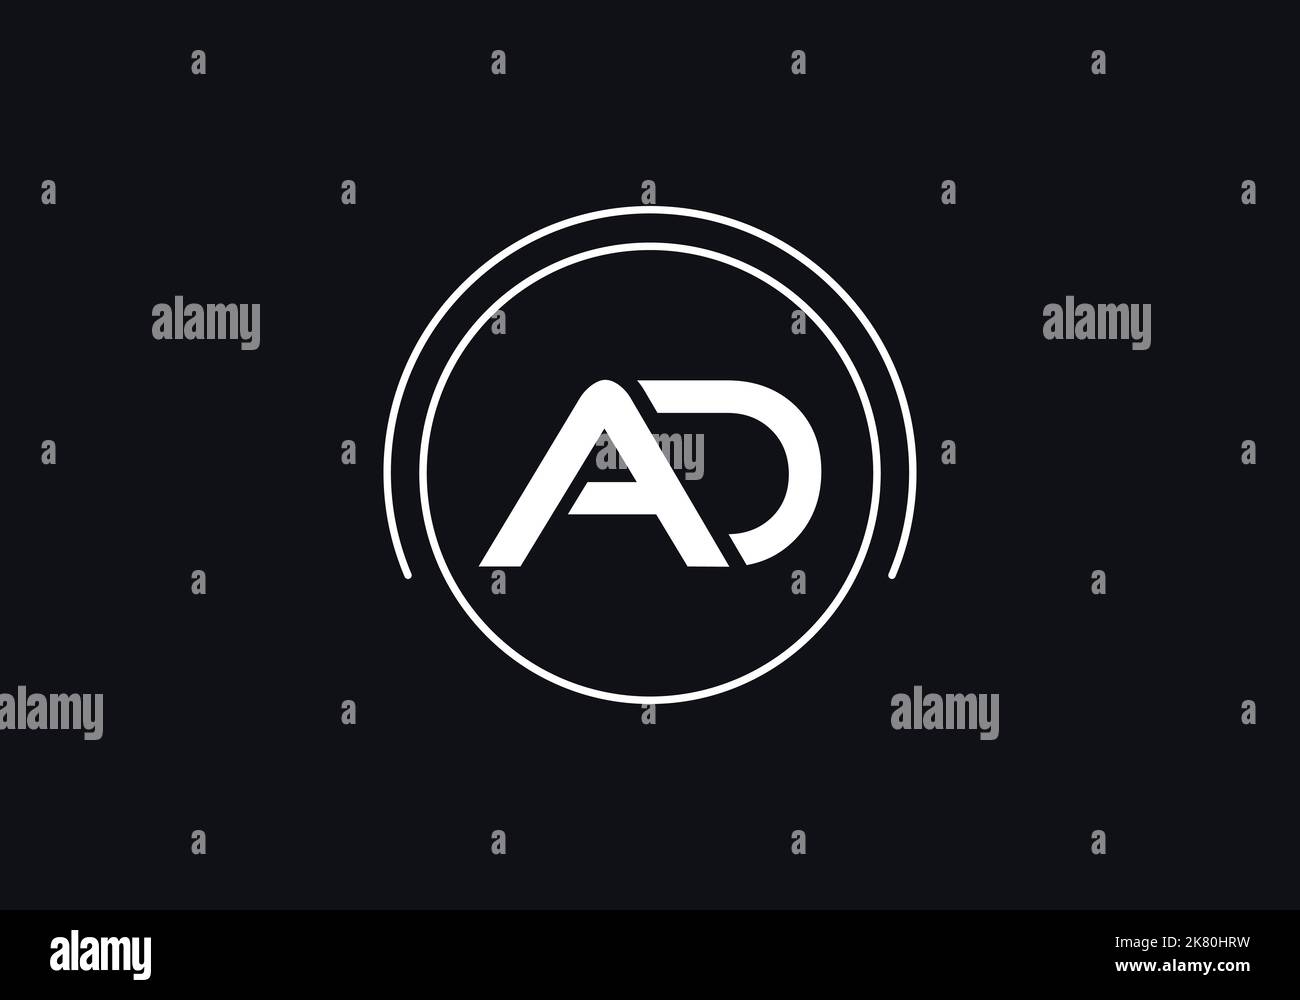 Cercle d'or logo de marque et simple alphabet plat symbole 2D logo design vecteur marque icônes lettres Illustration de Vecteur